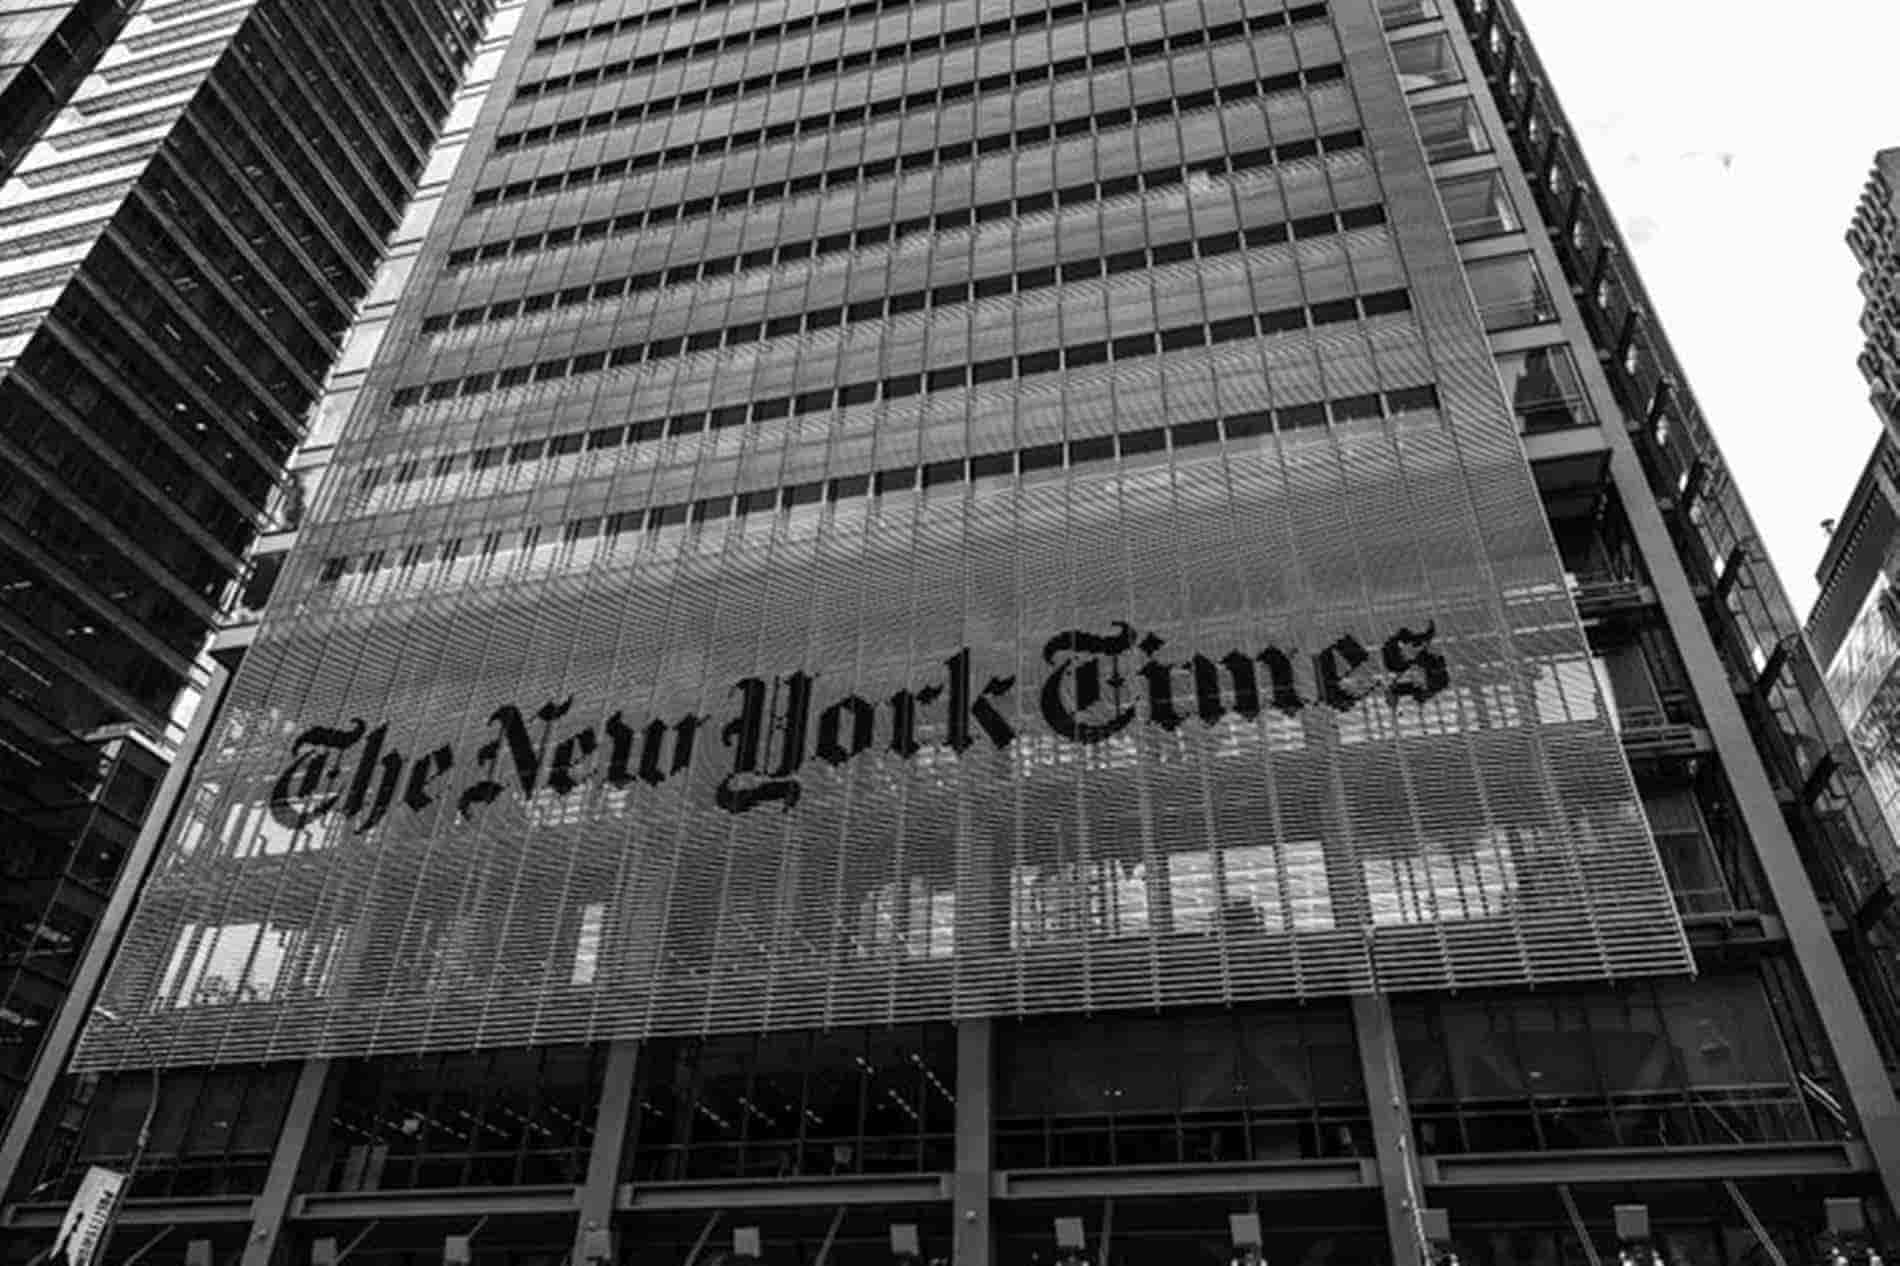 Corte de EU restringe publicaciones del New York Times; “una orden peligrosa”, acusan